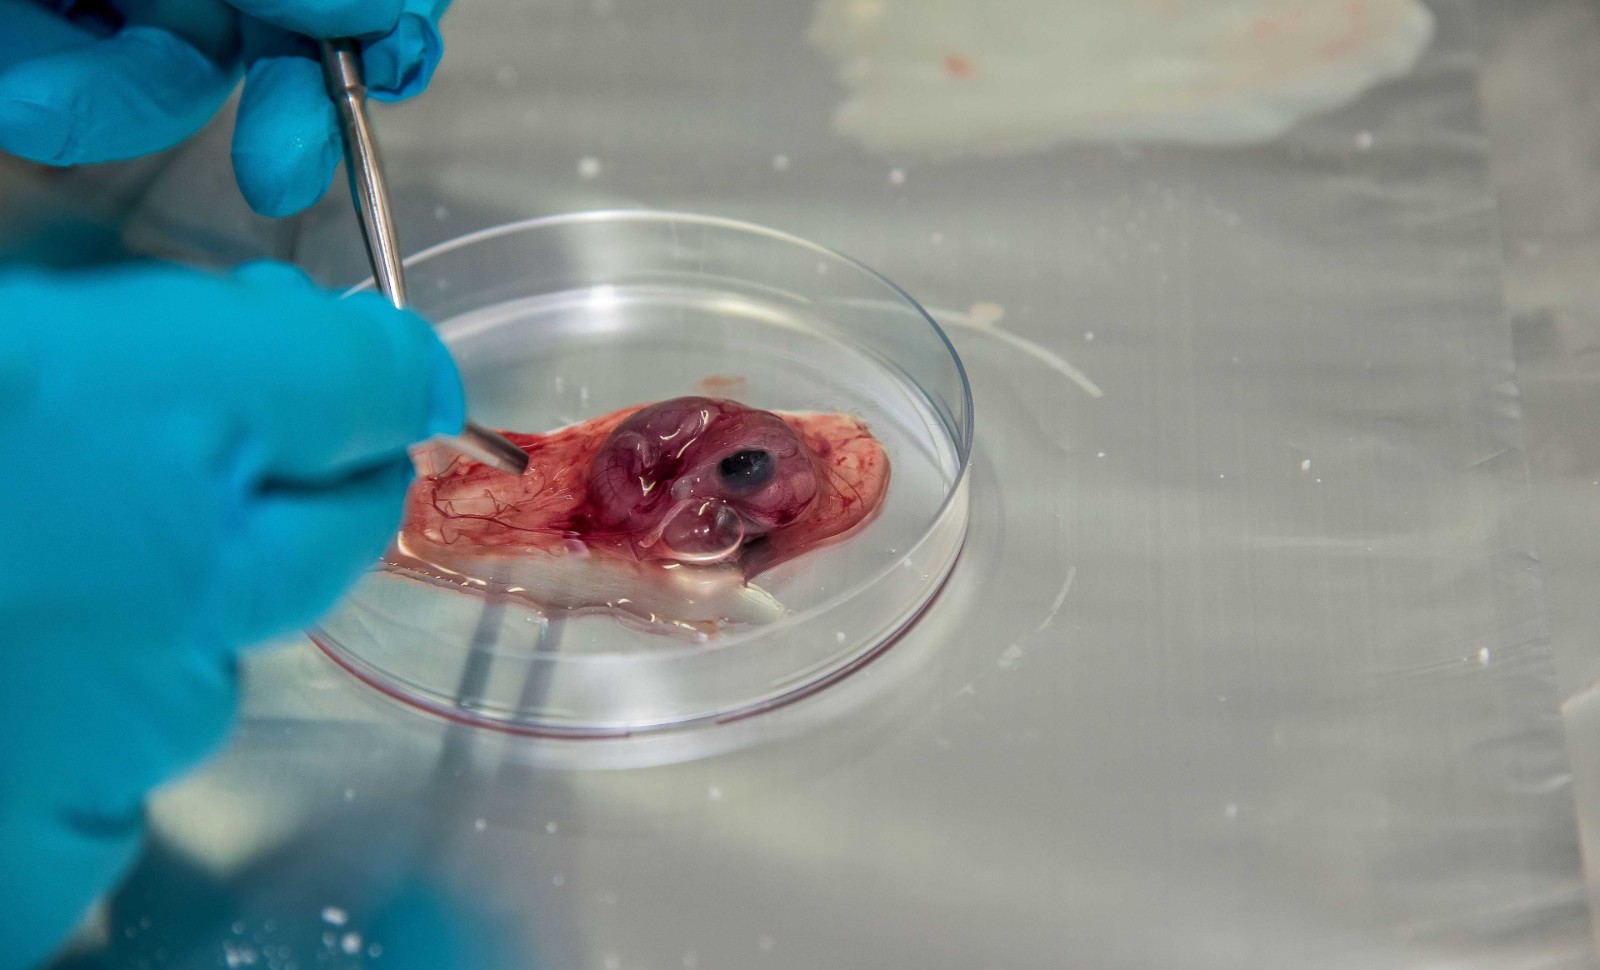 Le Japon expérimente les embryons humains-animaux